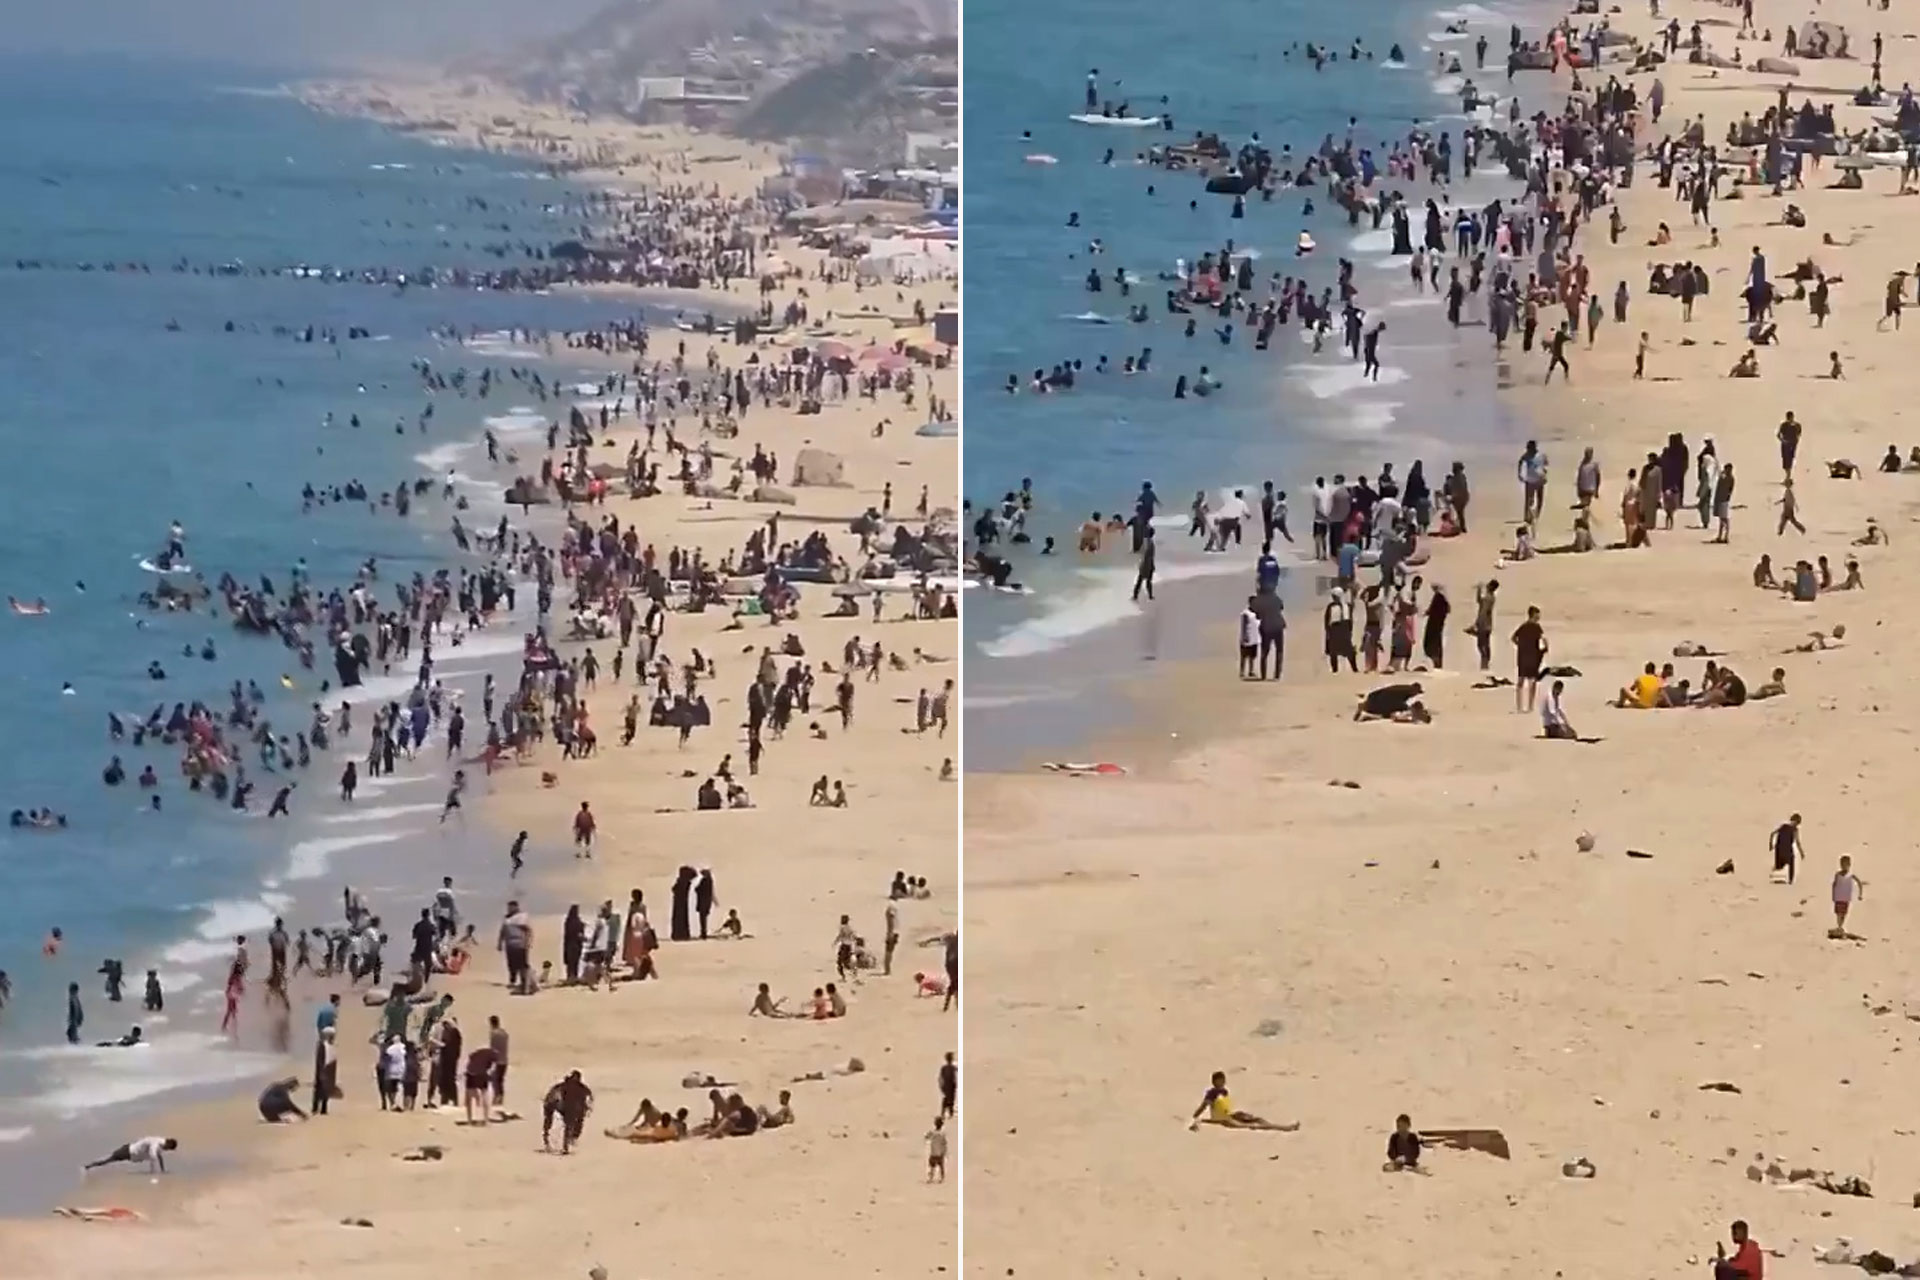 صور أهالي غزة على الشاطئ تغضب الإسرائيليين | أخبار – البوكس نيوز